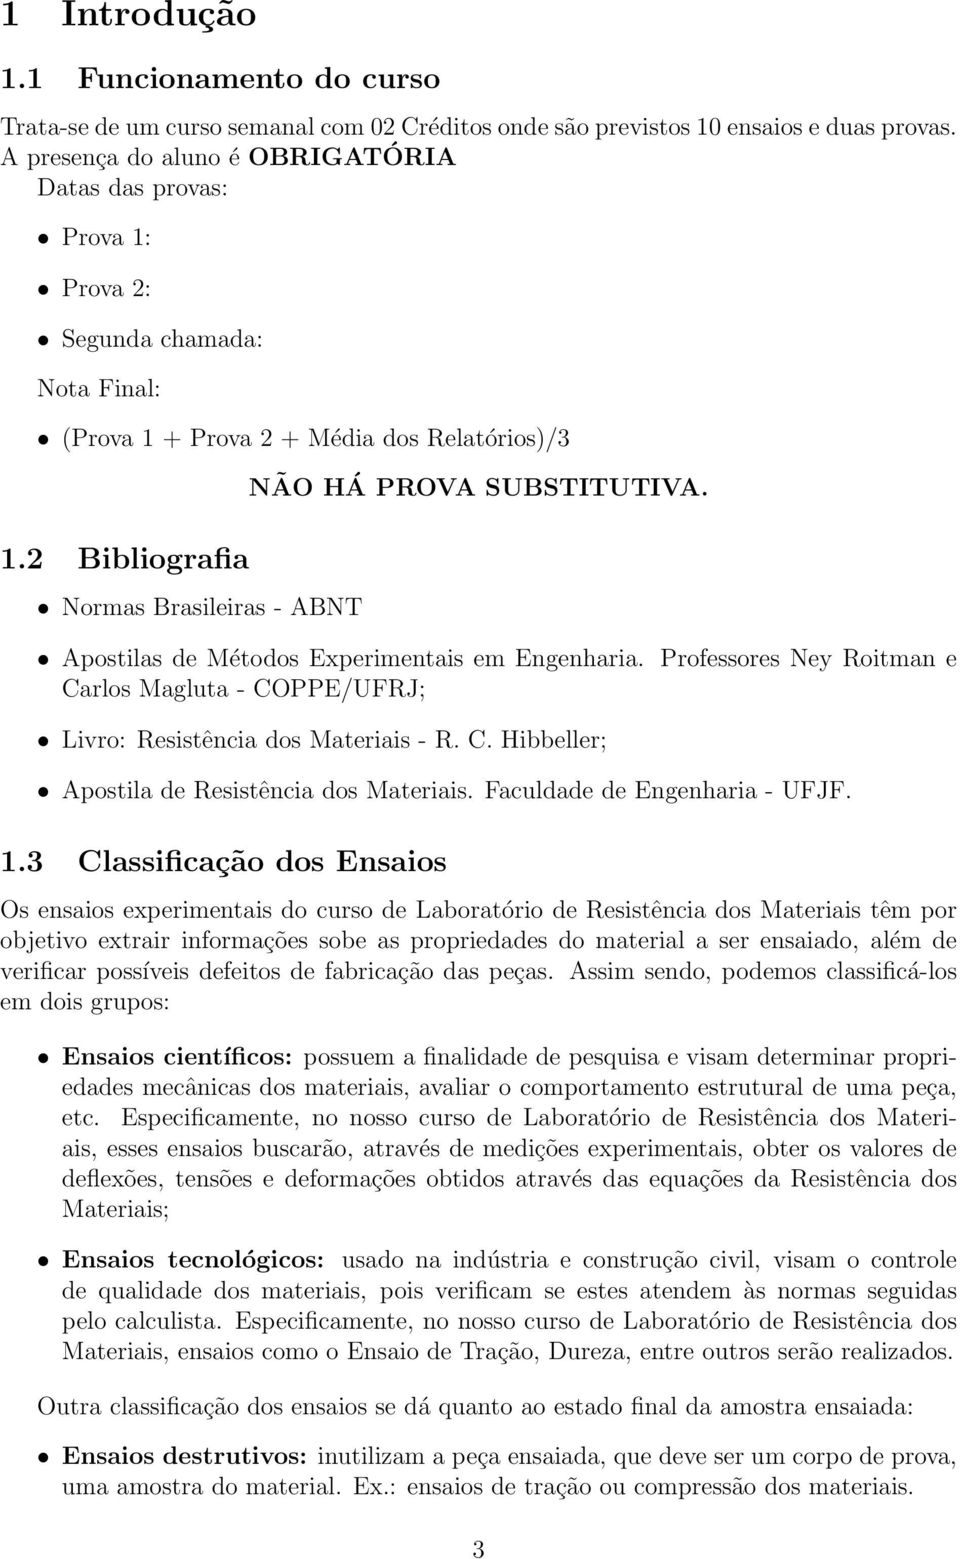 2 Bibliografia Normas Brasileiras - ABNT NÃO HÁ PROVA SUBSTITUTIVA. Apostilas de Métodos Experimentais em Engenharia.